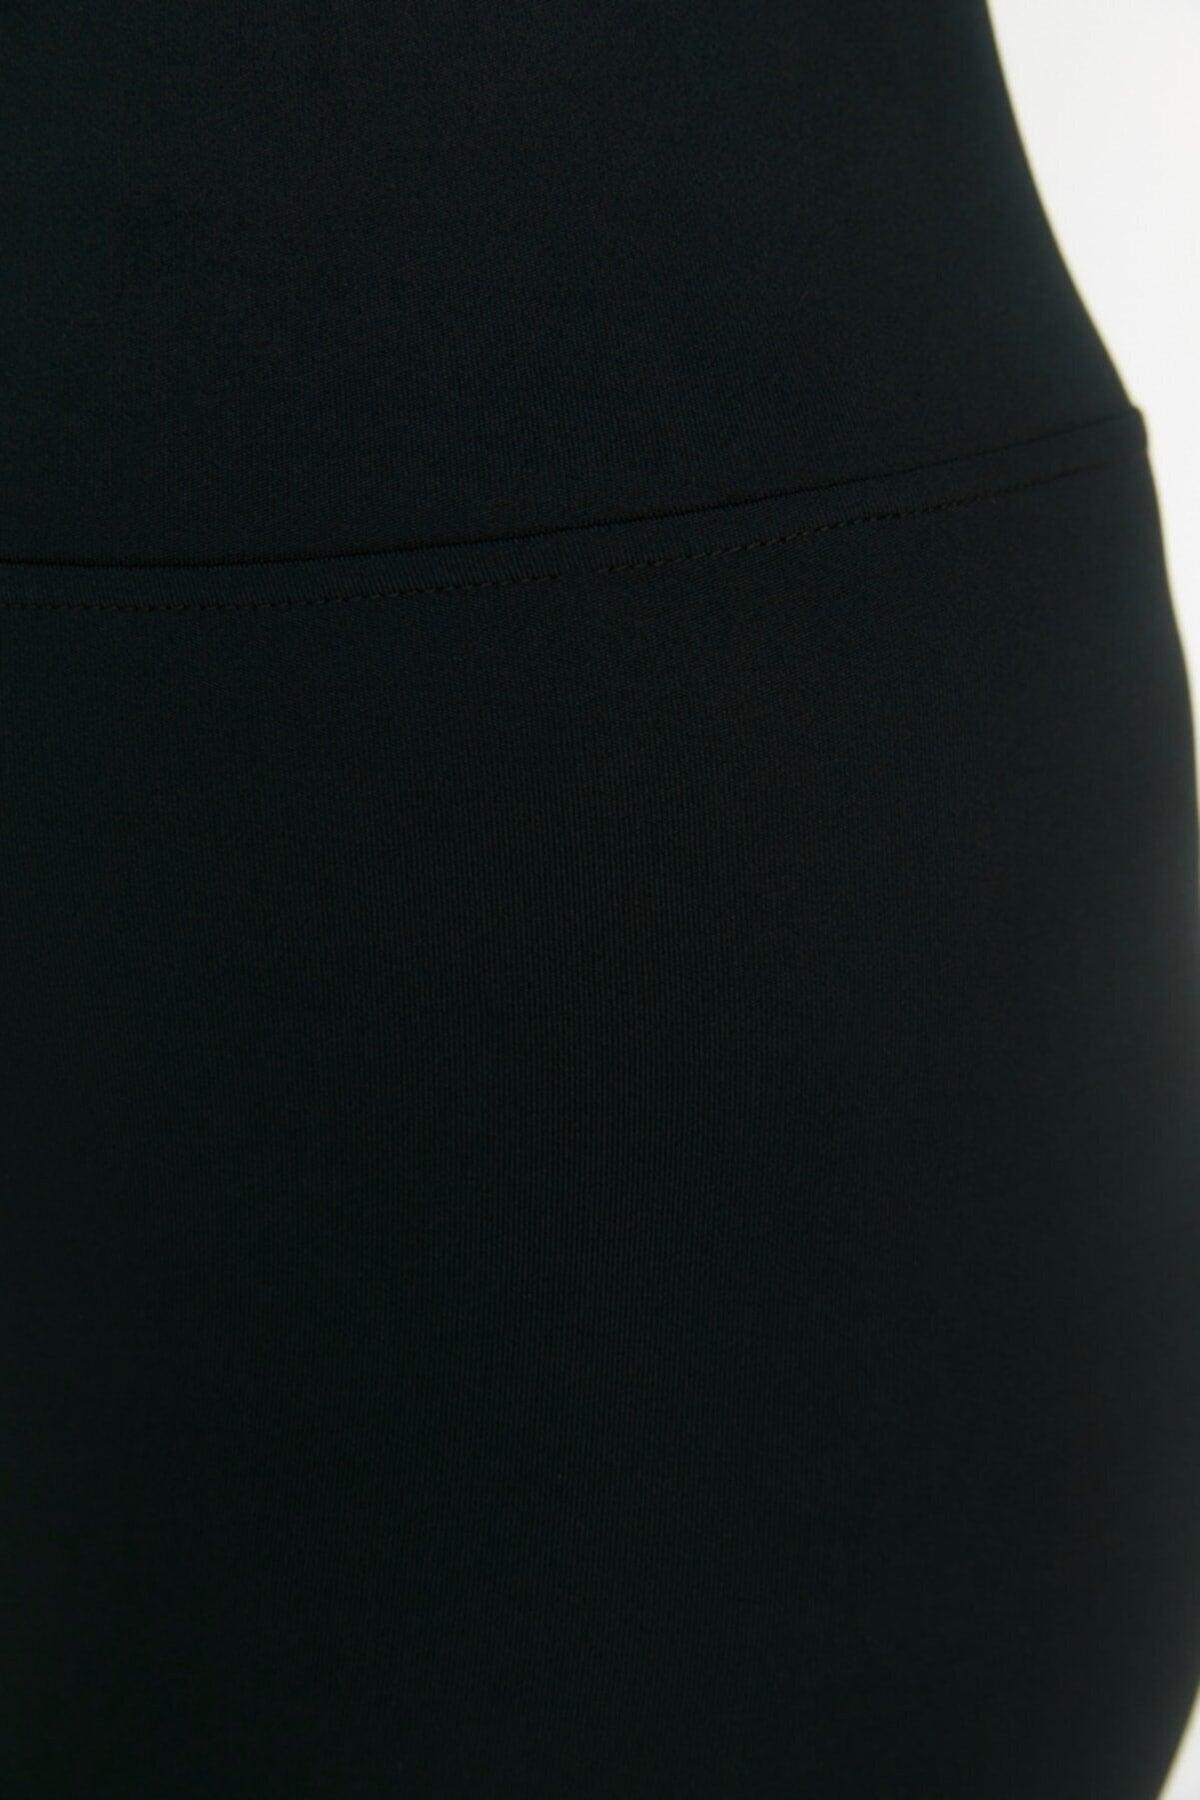 Women's Curve Steel Knit Plus Size Firming Firming High Waist Black Leggings - Swordslife